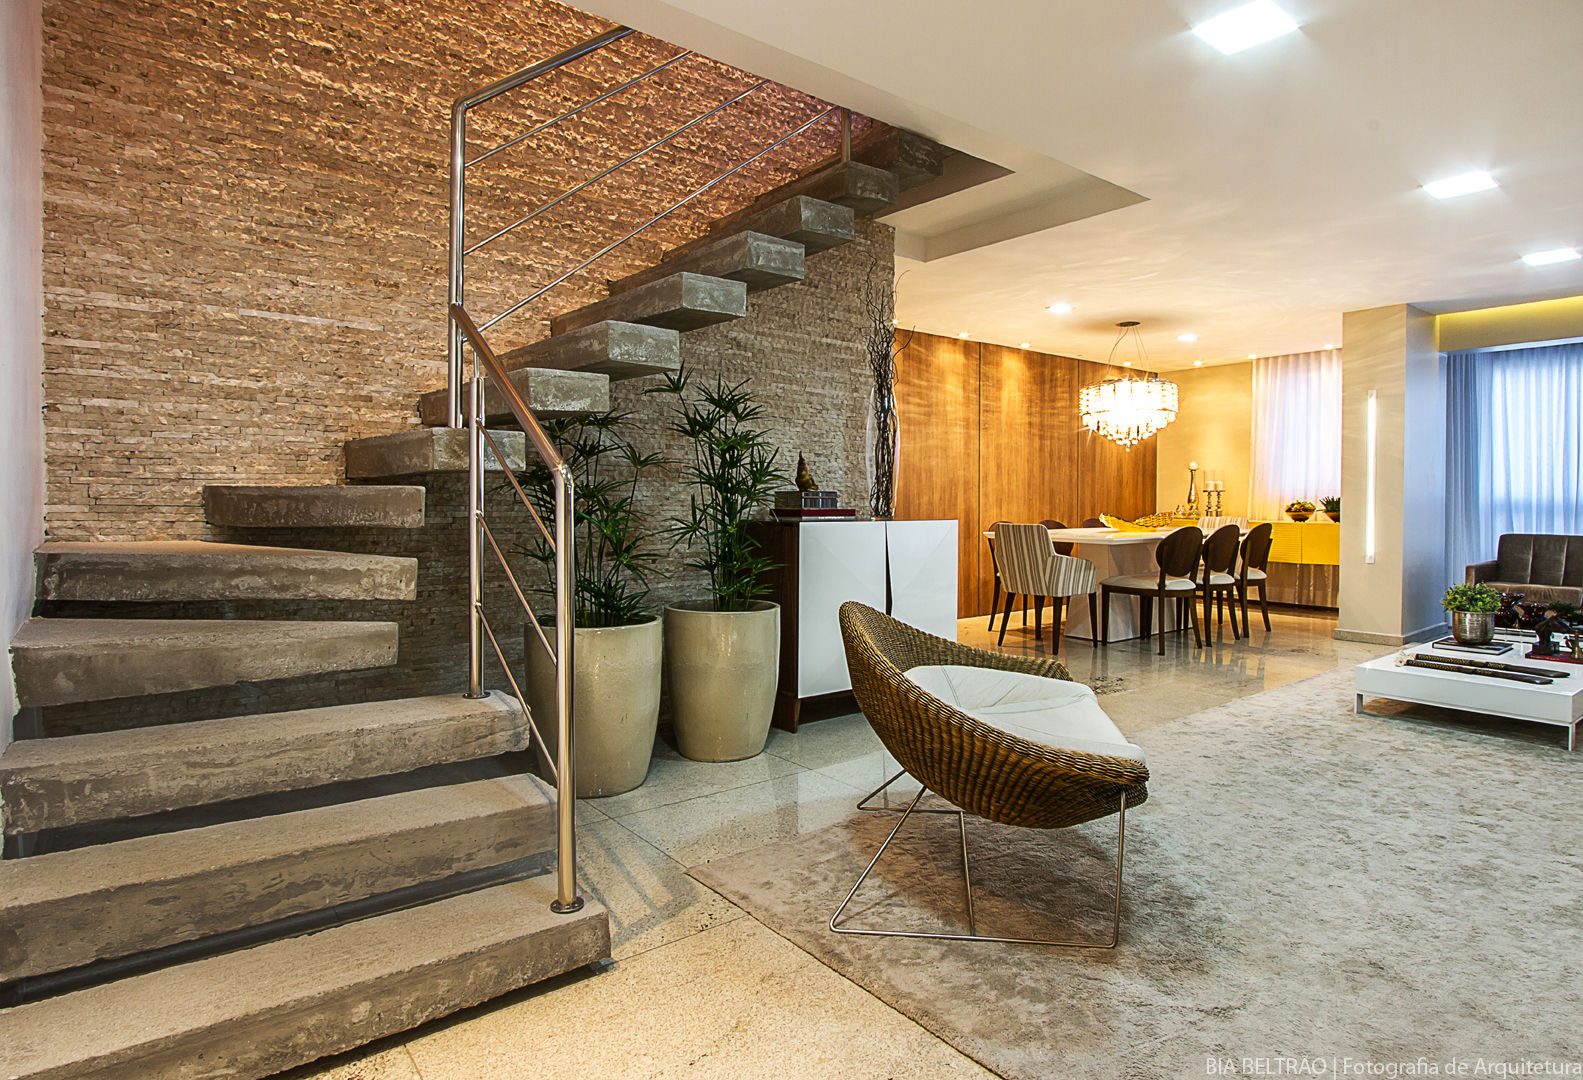 Apartamento, Maceió Al, Cris Nunes Arquiteta Cris Nunes Arquiteta Livings de estilo clásico